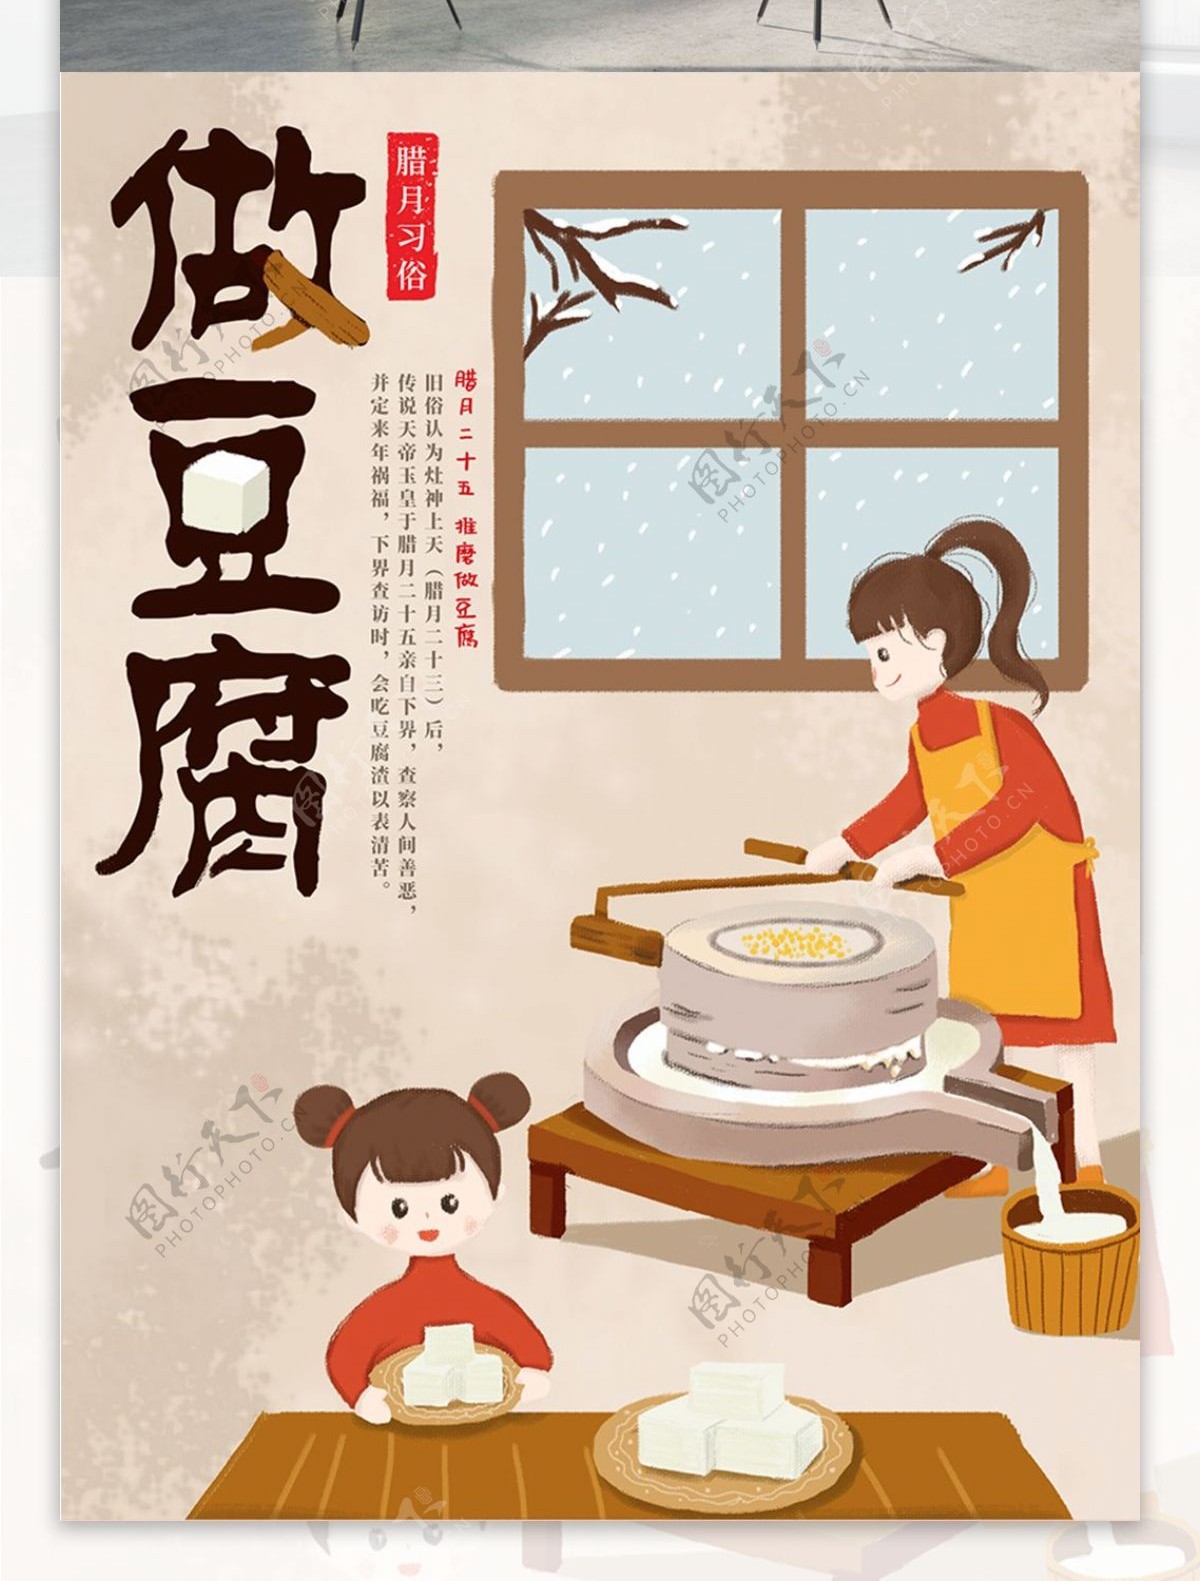 原创手绘插画腊月习俗做豆腐海报